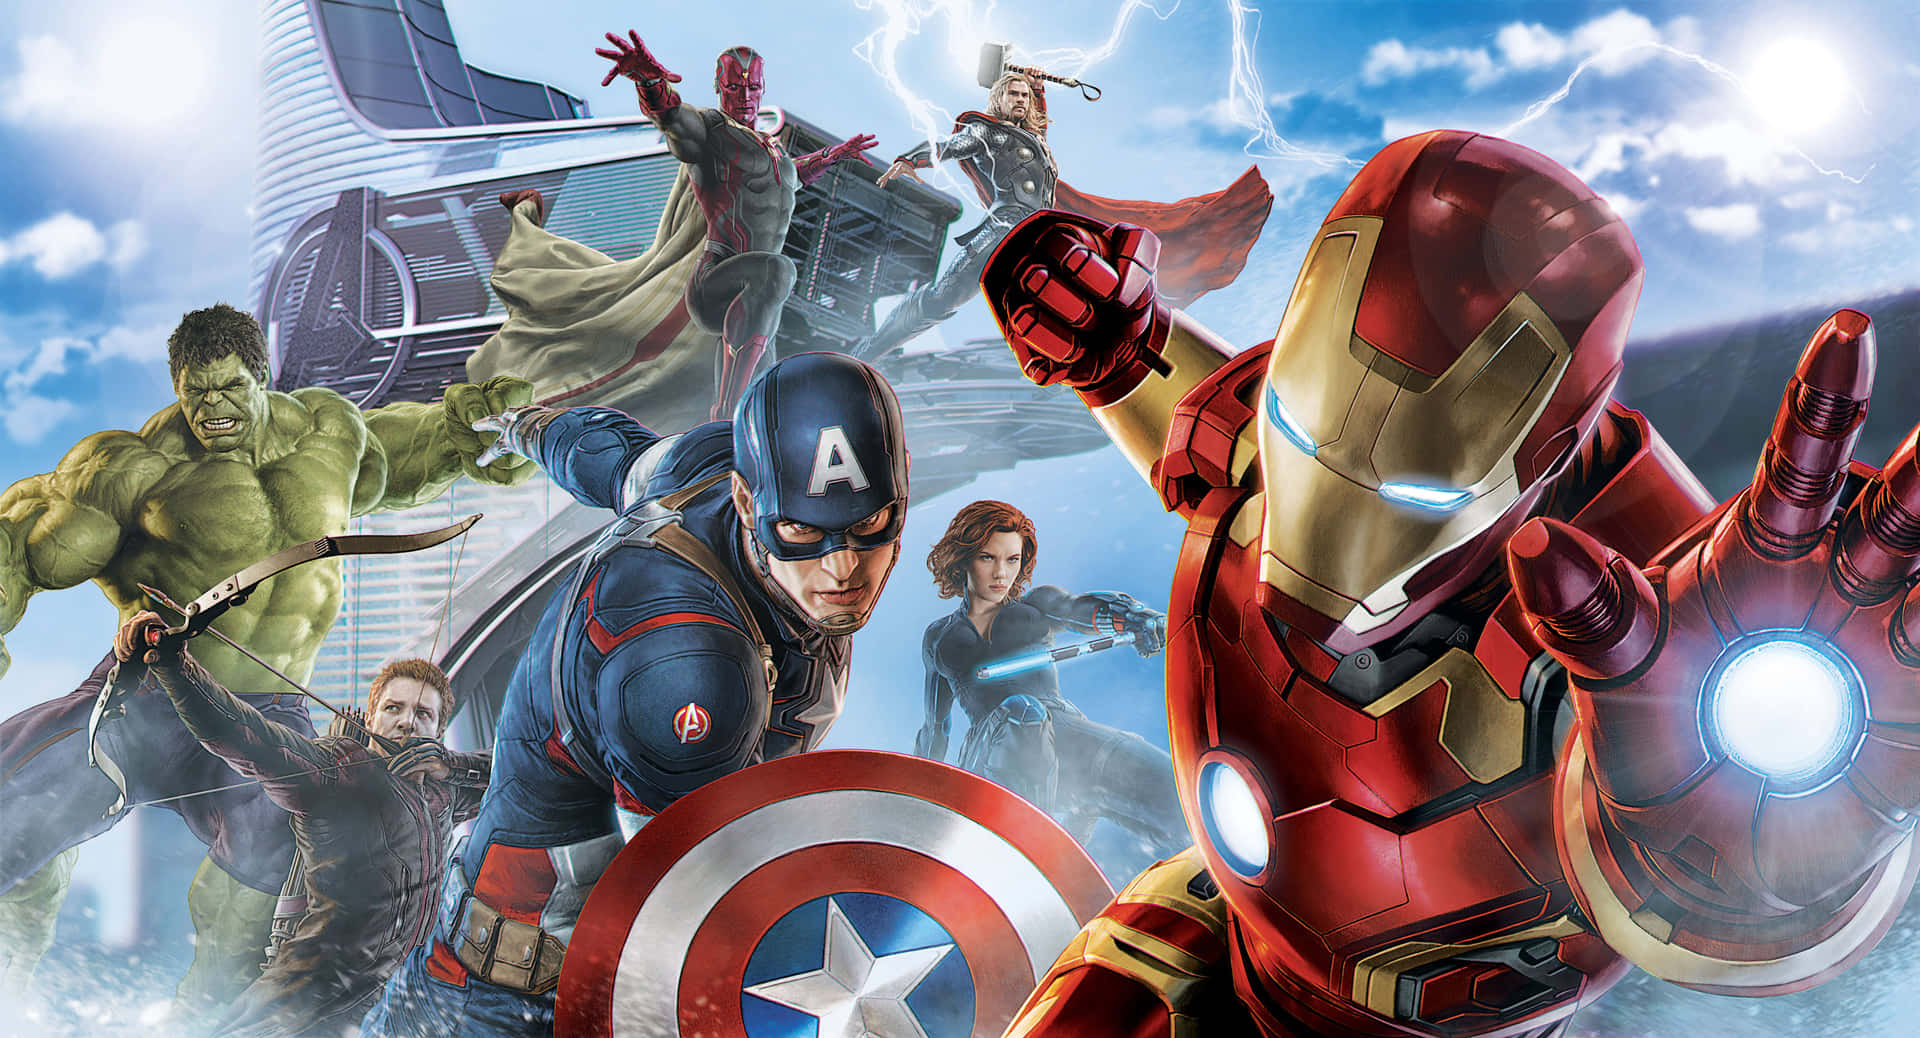 Jordensmäktigaste Hjältar, The Avengers. Wallpaper